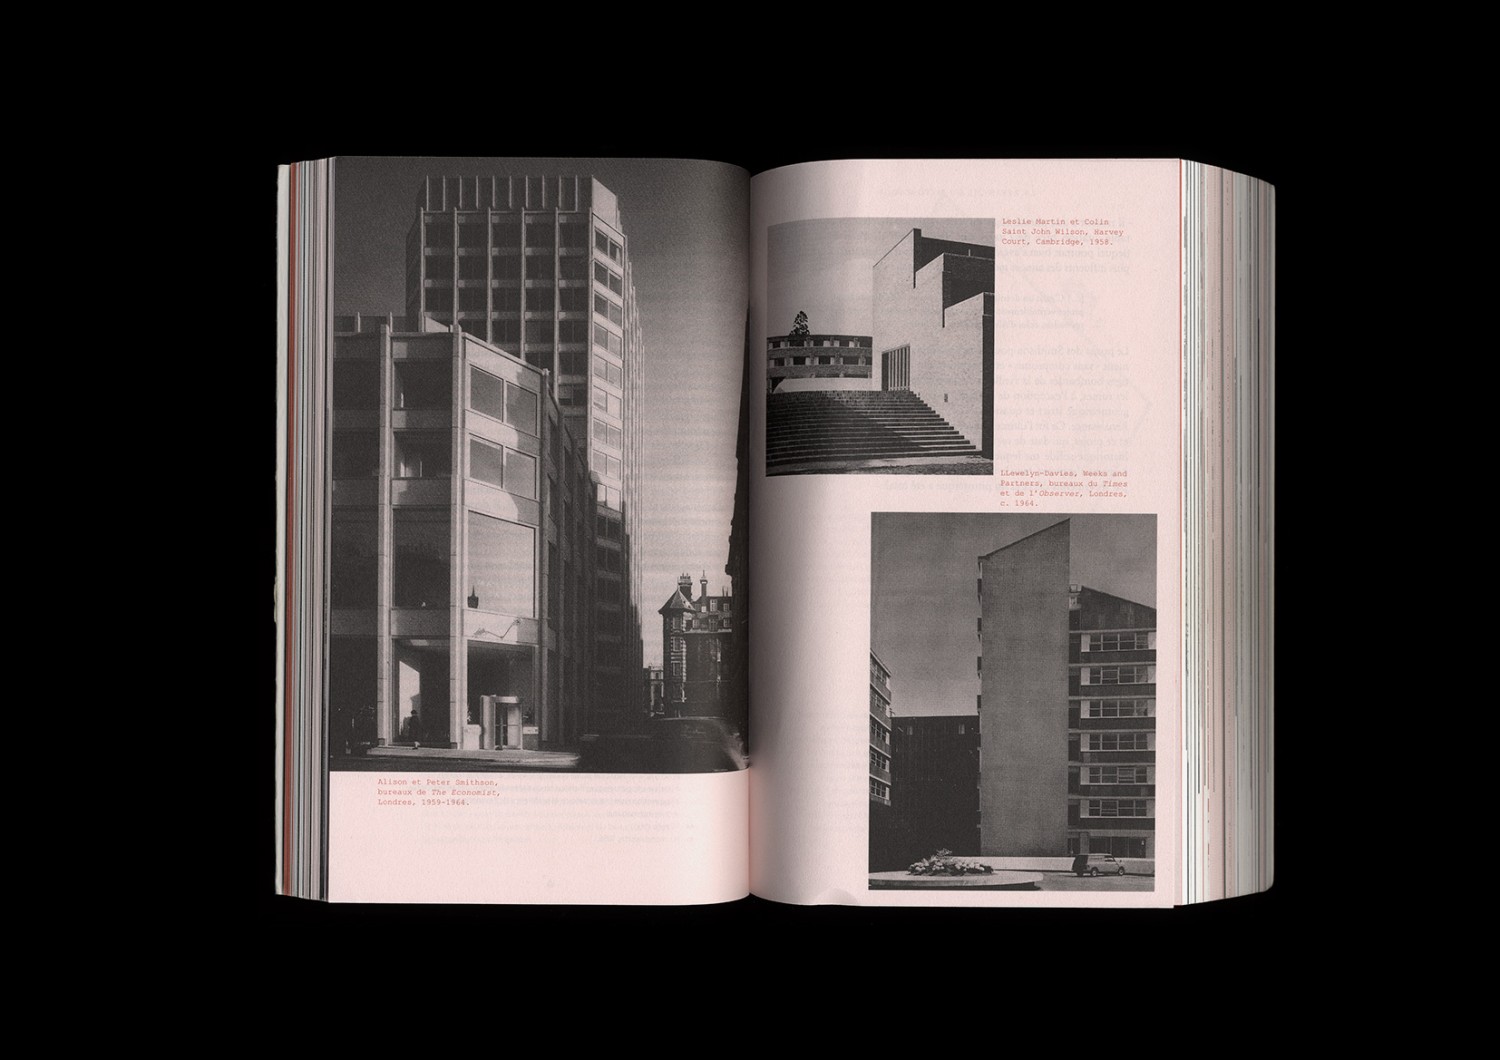 <p>Marnes, documents d’architecture, vol. 1<br />
Photo © Building Paris</p>